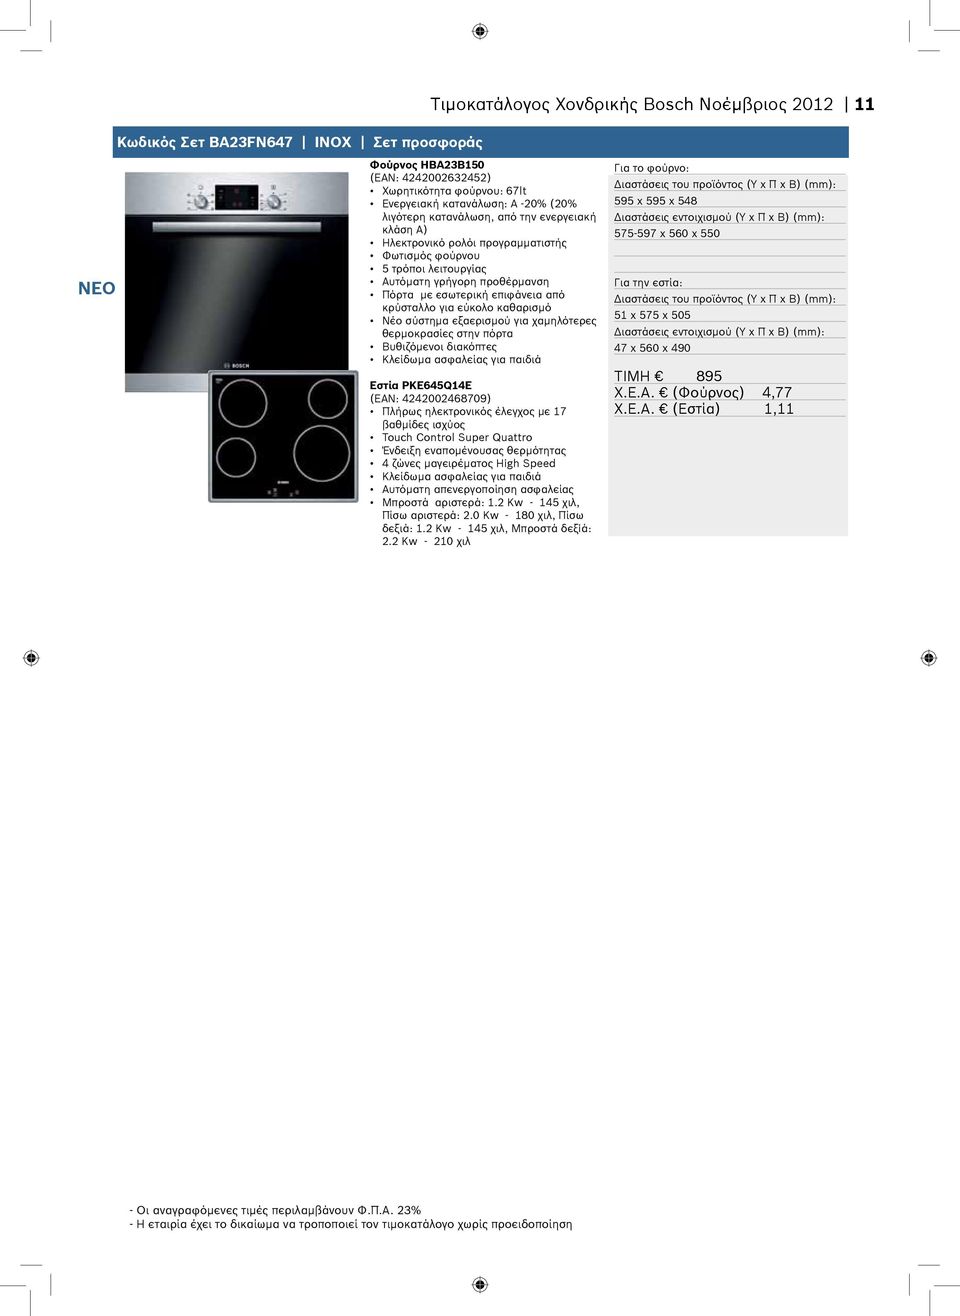 καθαρισμό Νέο σύστημα εξαερισμού για χαμηλότερες θερμοκρασίες στην πόρτα Βυθιζόμενοι διακόπτες Εστία PKE645Q14E (ΕΑΝ: 4242002468709) Πλήρως ηλεκτρονικός έλεγχος με 17 βαθμίδες ισχύος Touch Control